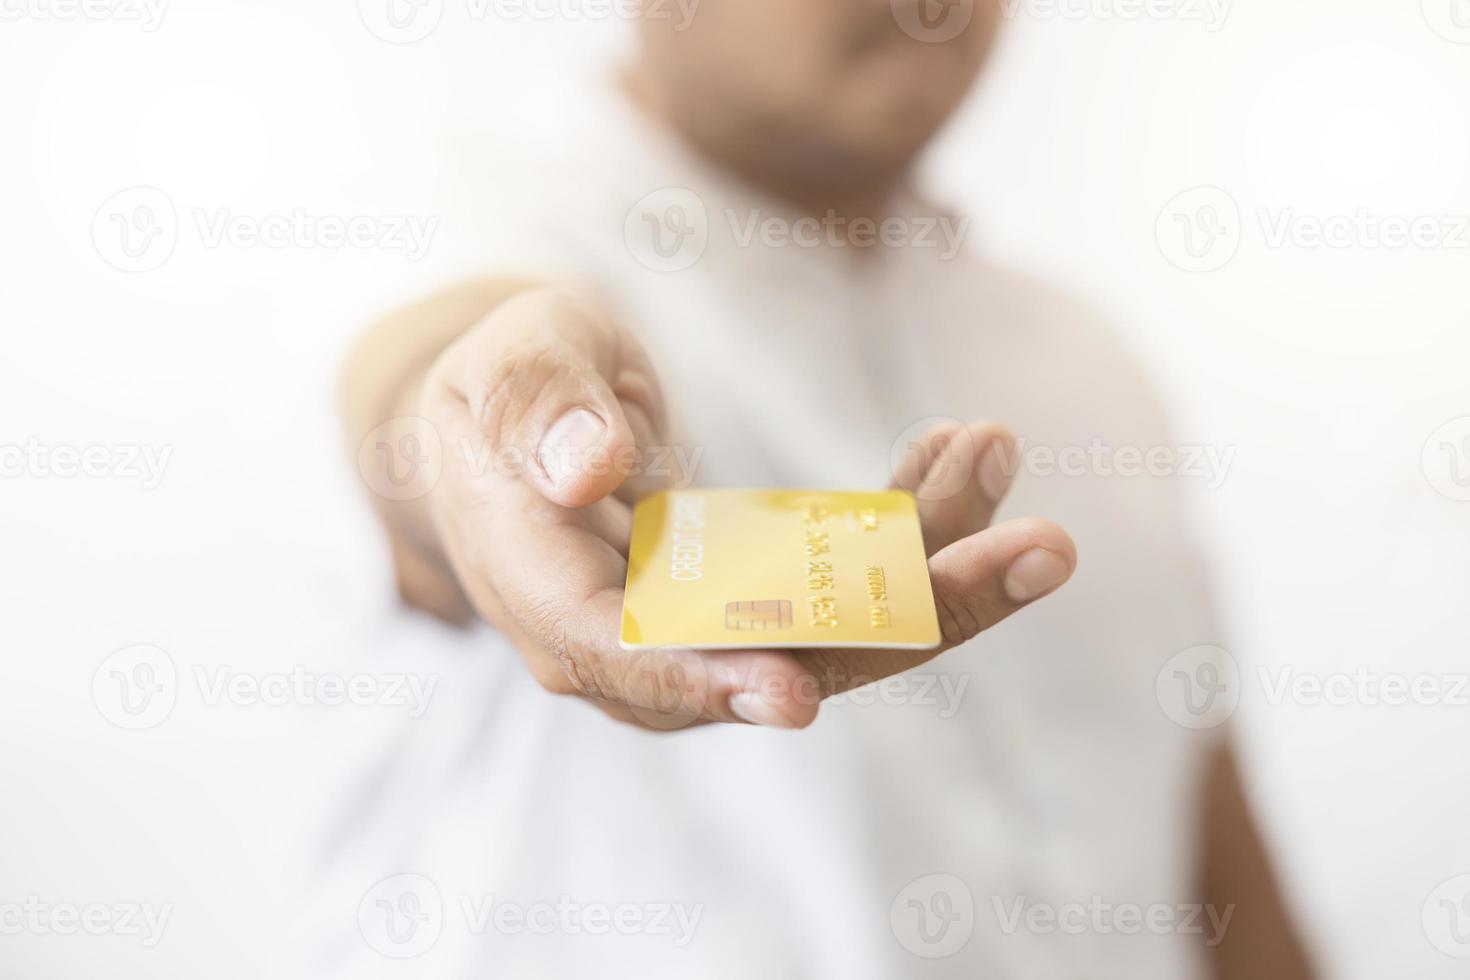 main en gros plan d'un homme asiatique tenant une carte de crédit en or jaune dans sa main. isolé sur fond blanc. concept de finance, commerce, communication, social, technologie, entreprise photo